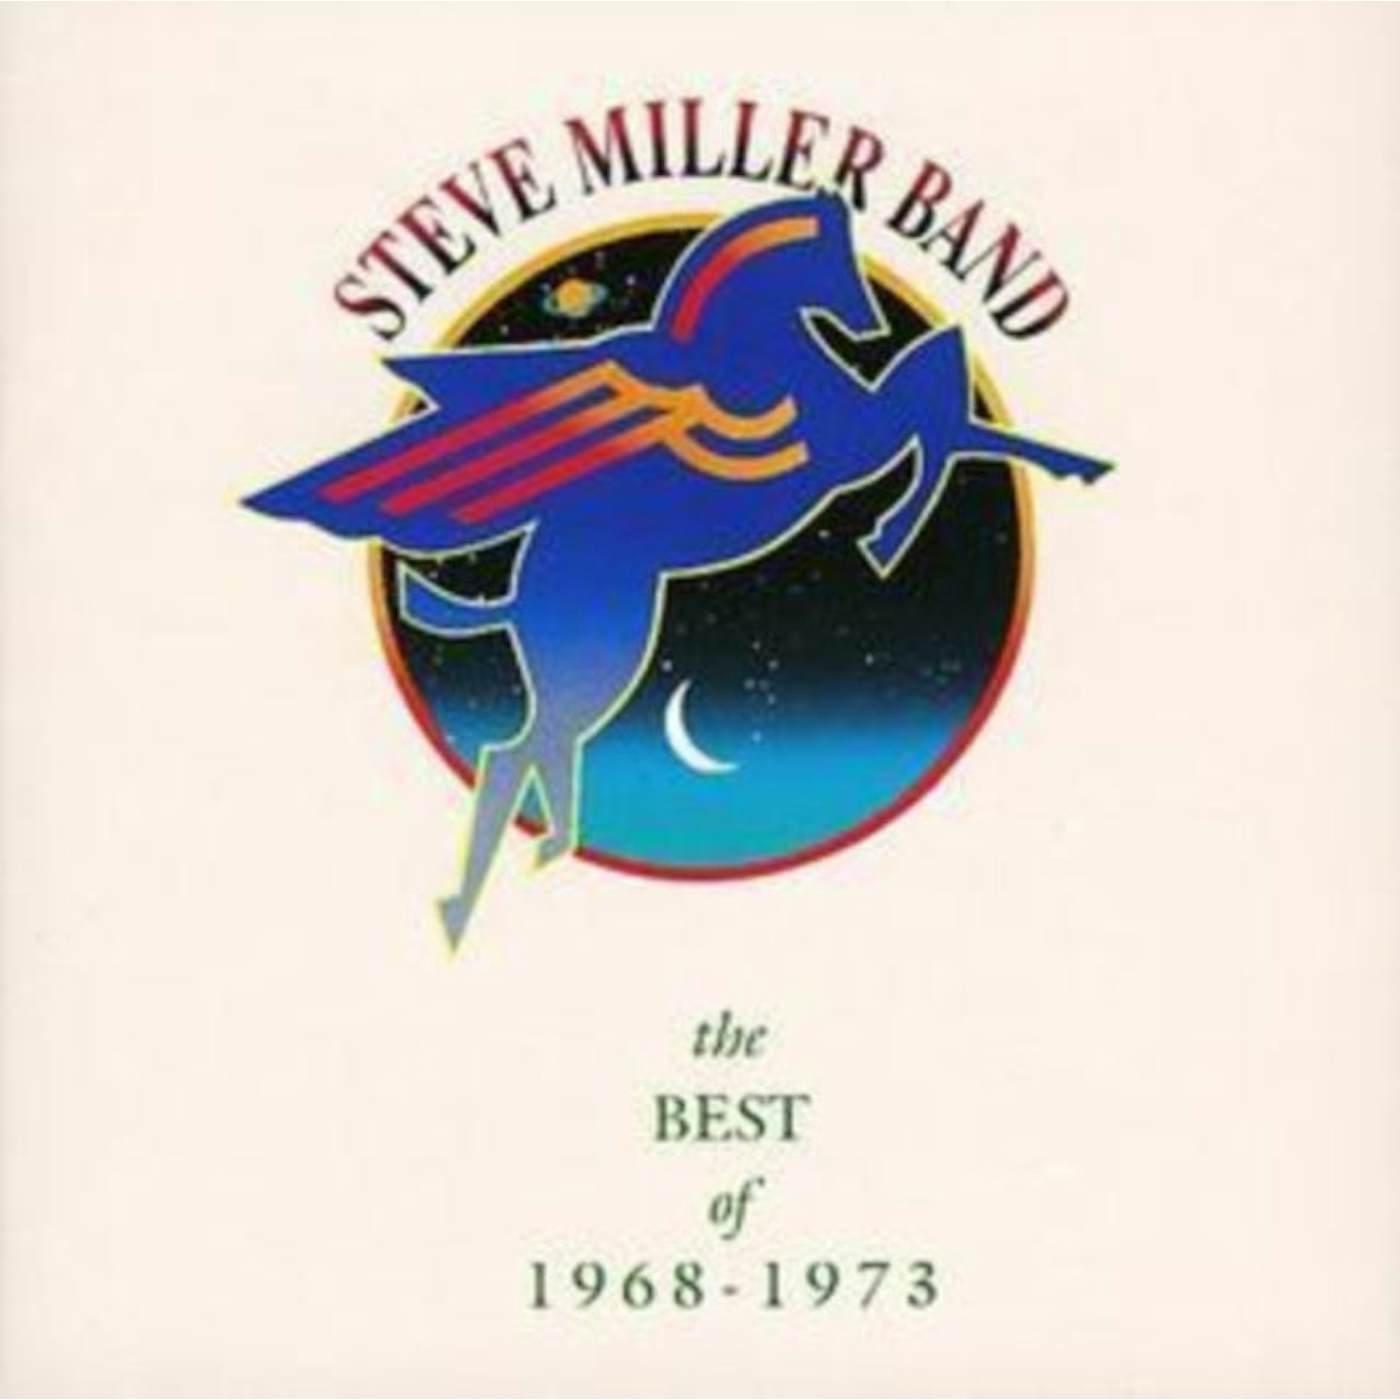 Steve Miller Band CD - Best Of 19 68 To 19 73